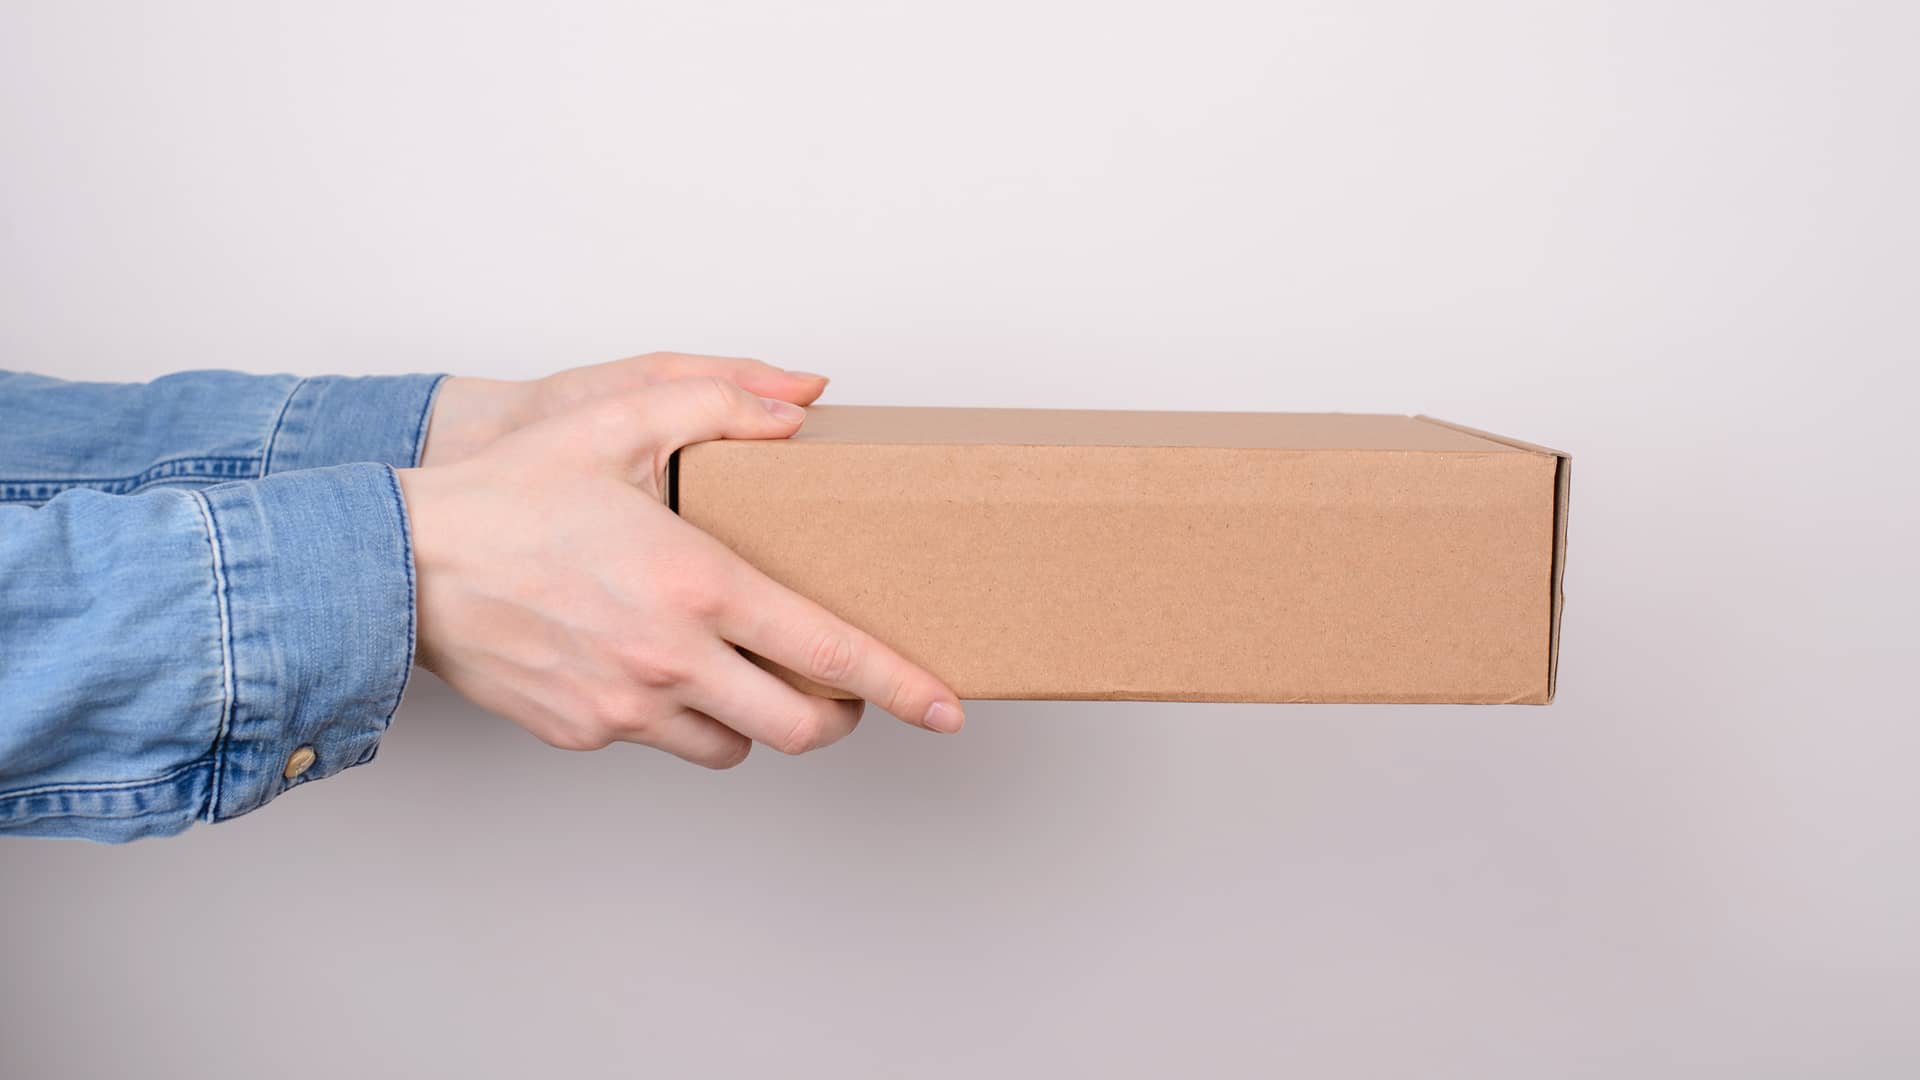 Persona con caja que contiene equipos vodafone a devolver